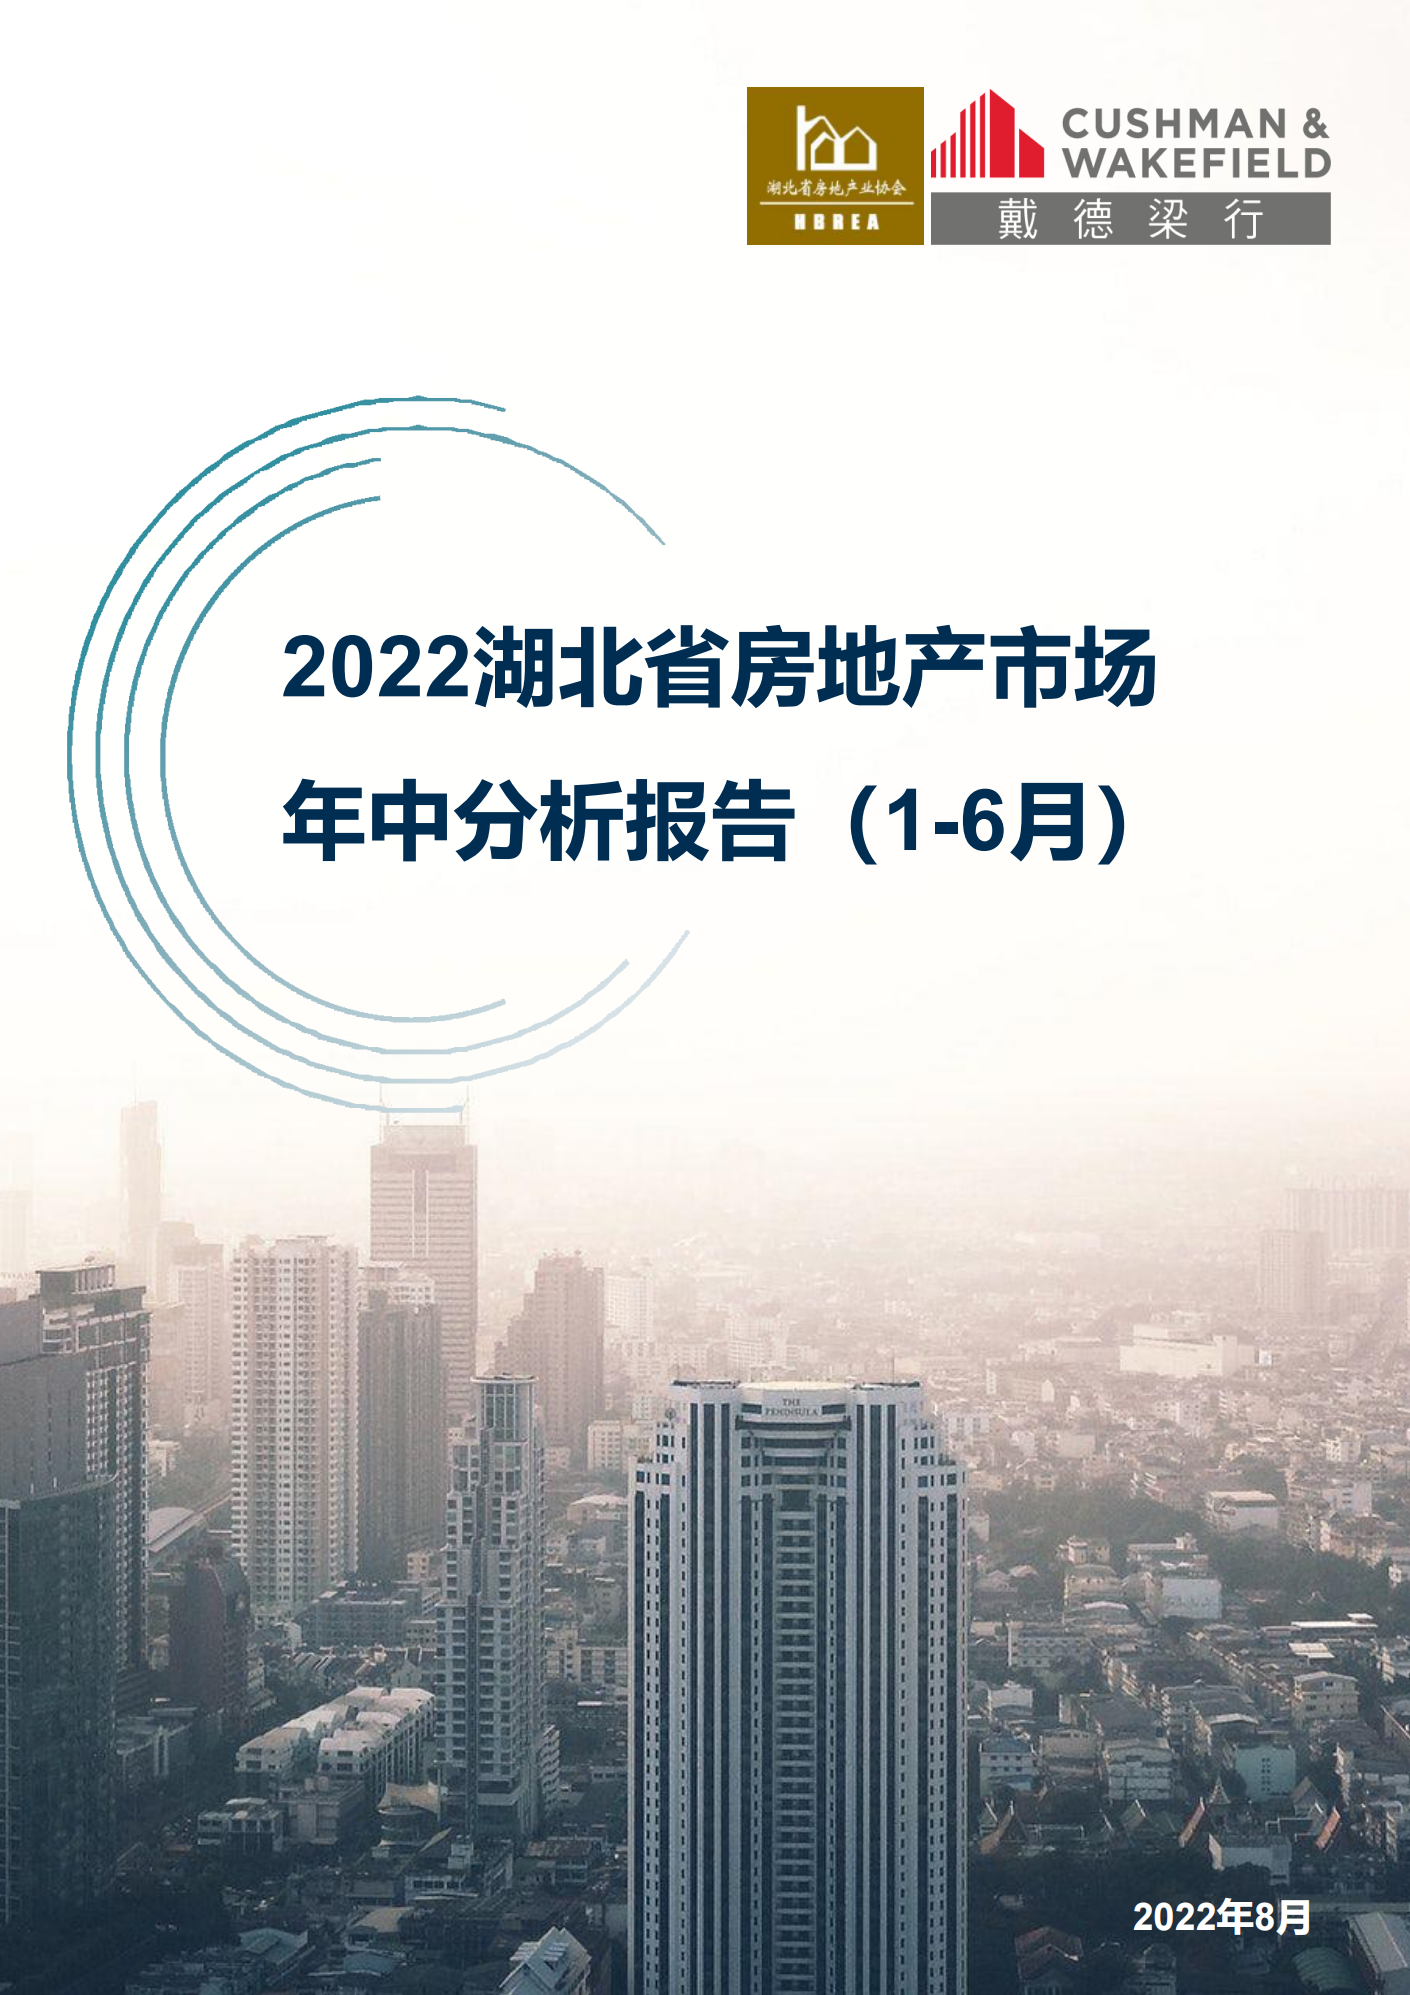 湖北省2022年中房地产市场专题报告0810.png